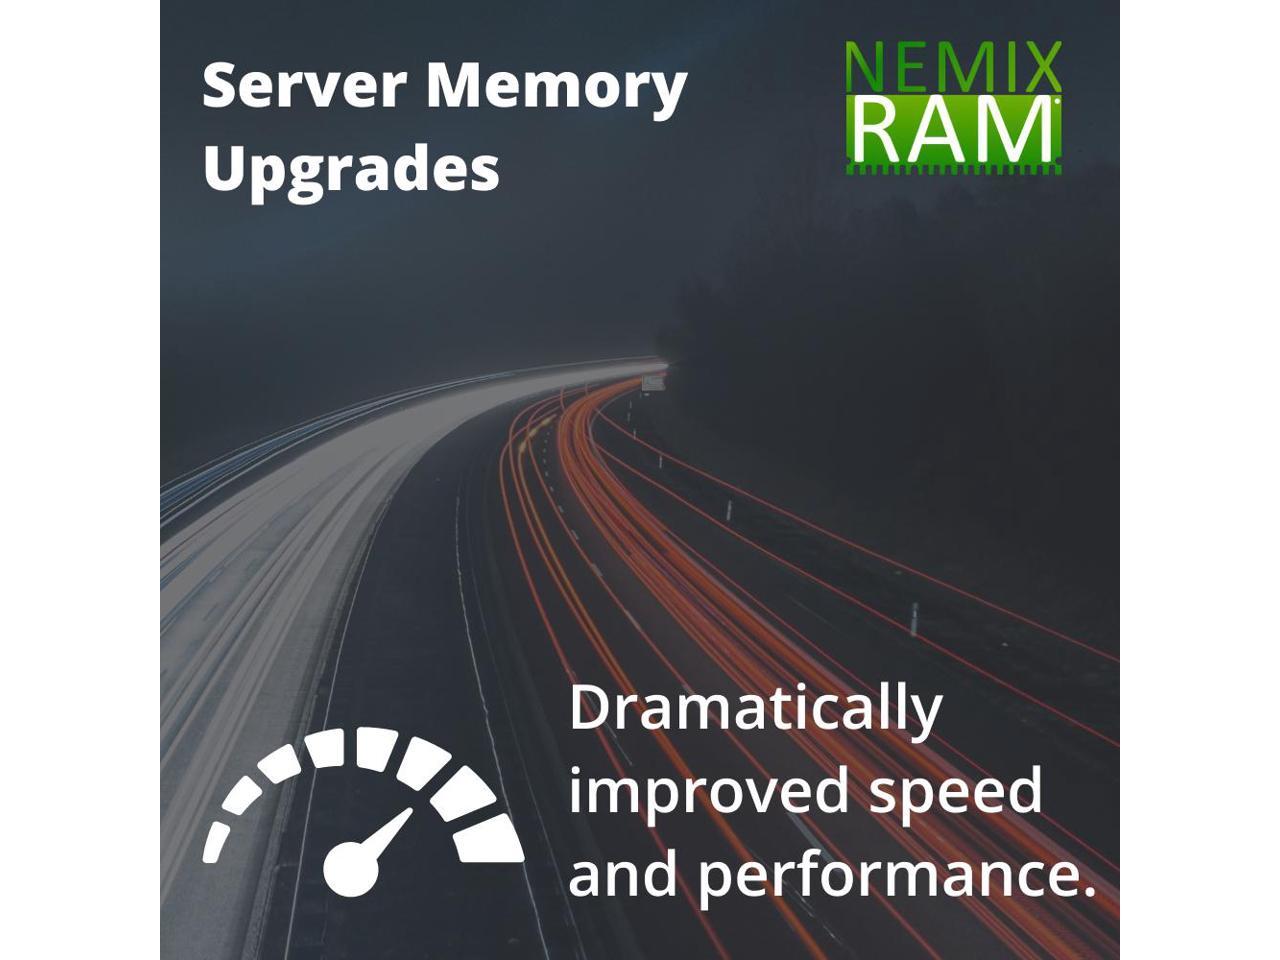 NEMIX RAM N8102-540F for NEC Express5800/R120e-1M 64GB (2x32GB) LRDIMM  Memory